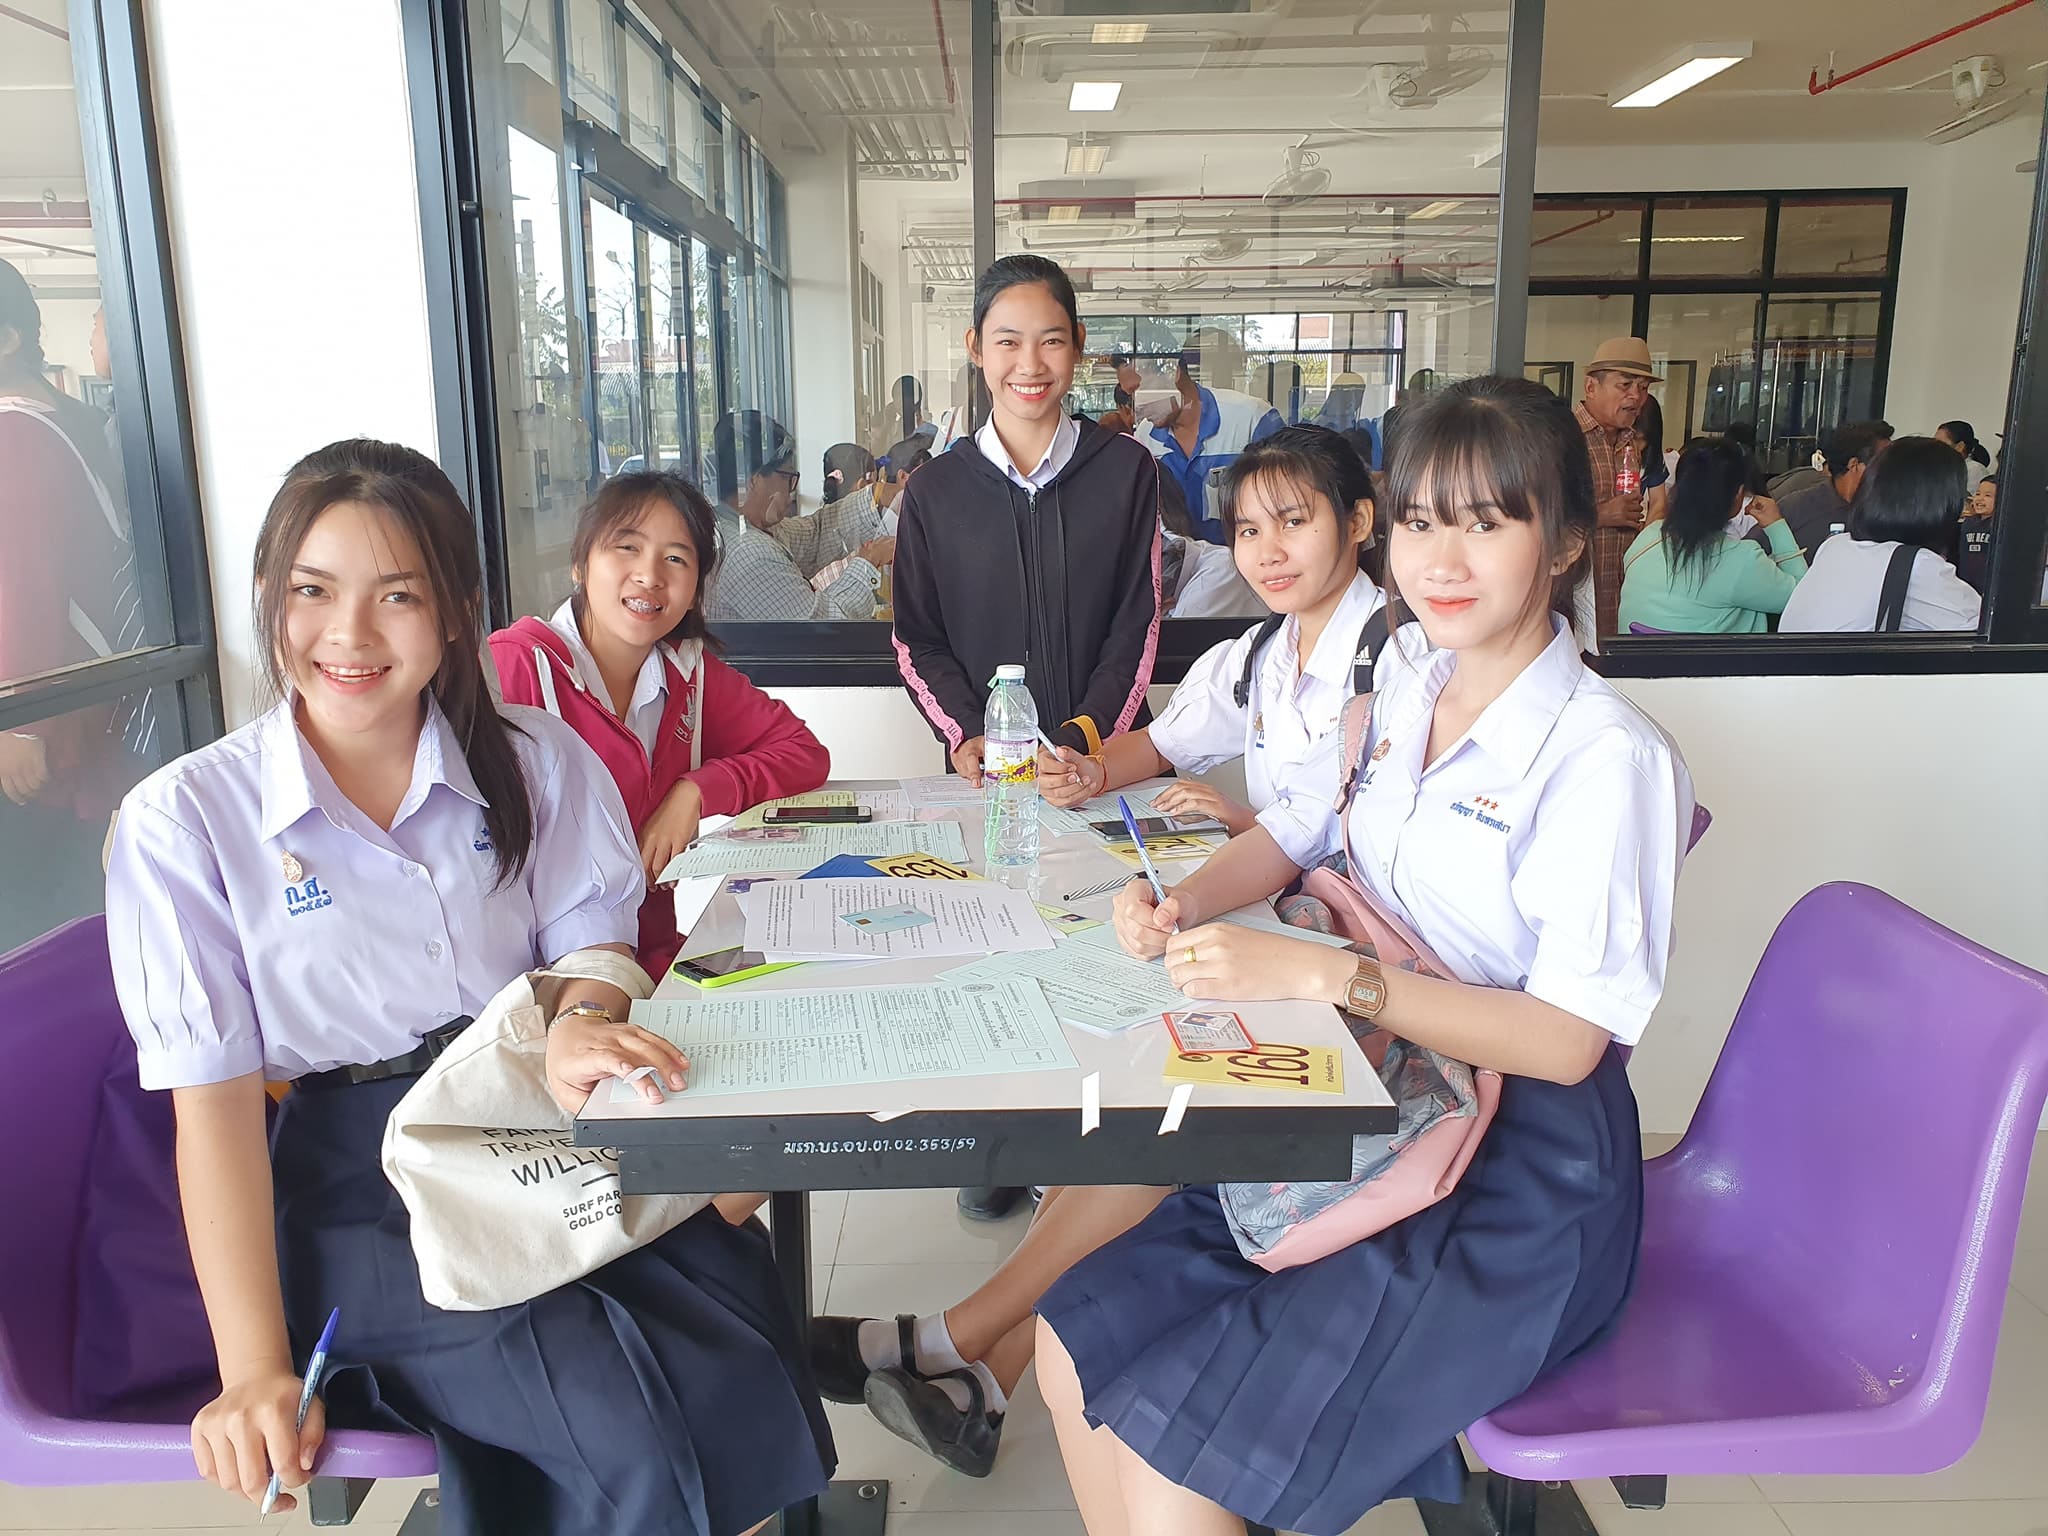 นักเรียนใหม่รายงานตัวที่มหาวิทยาลัยราชภัฏบุรีรัมย์